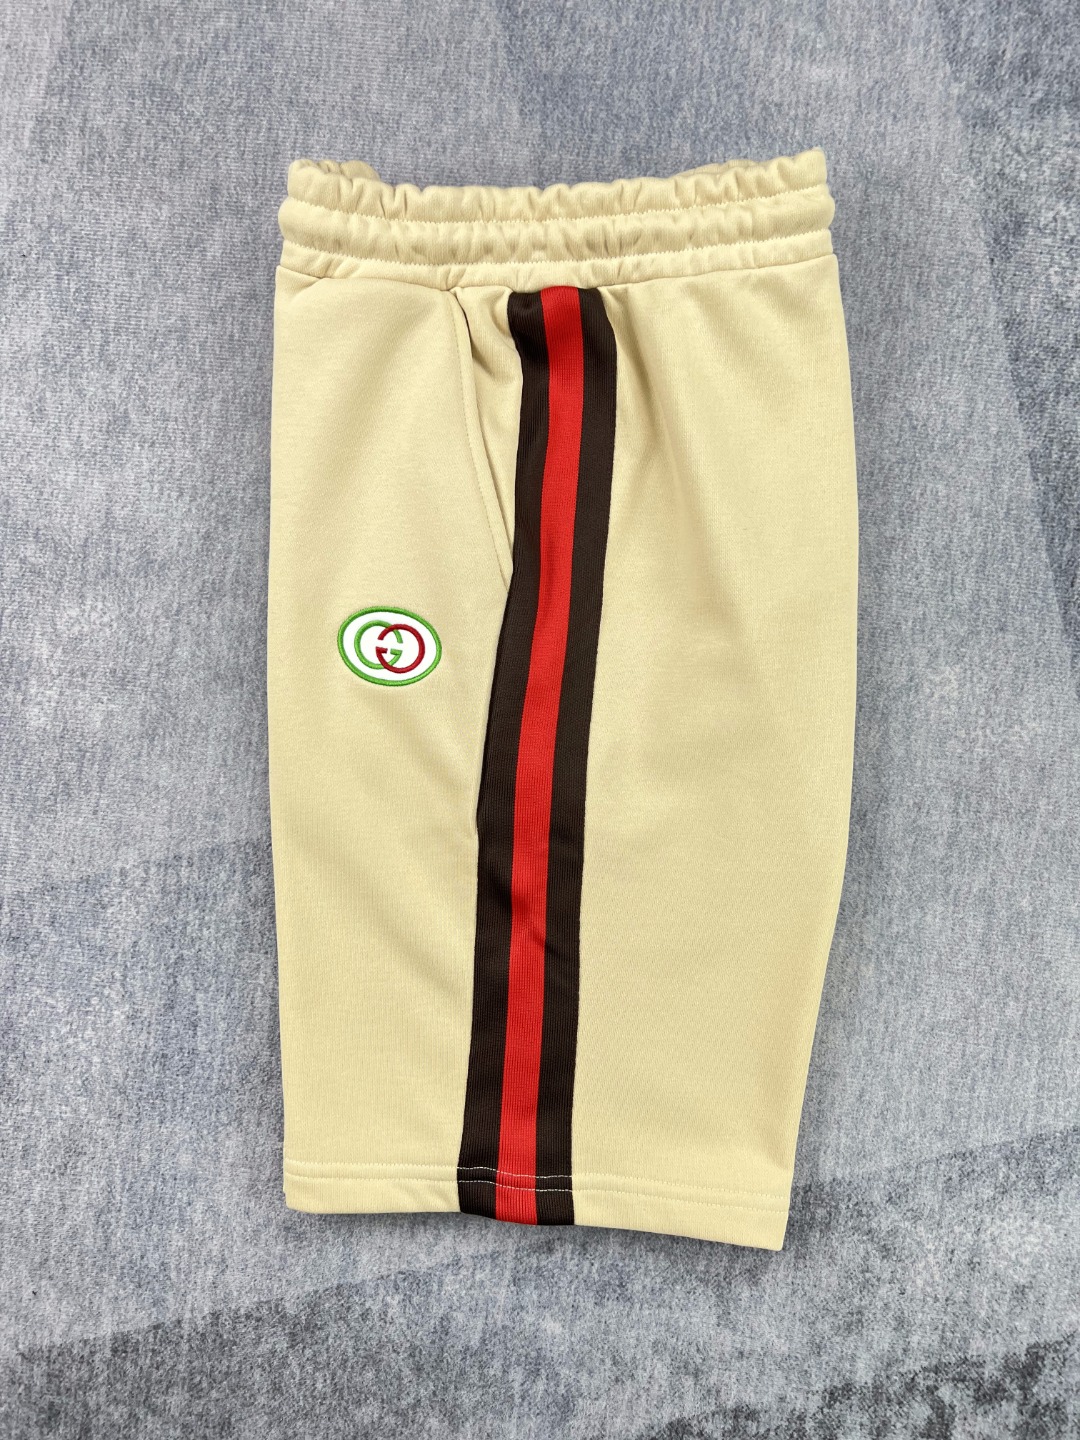 Gucci 22夏季新款 刺绣logo织带休闲短裤